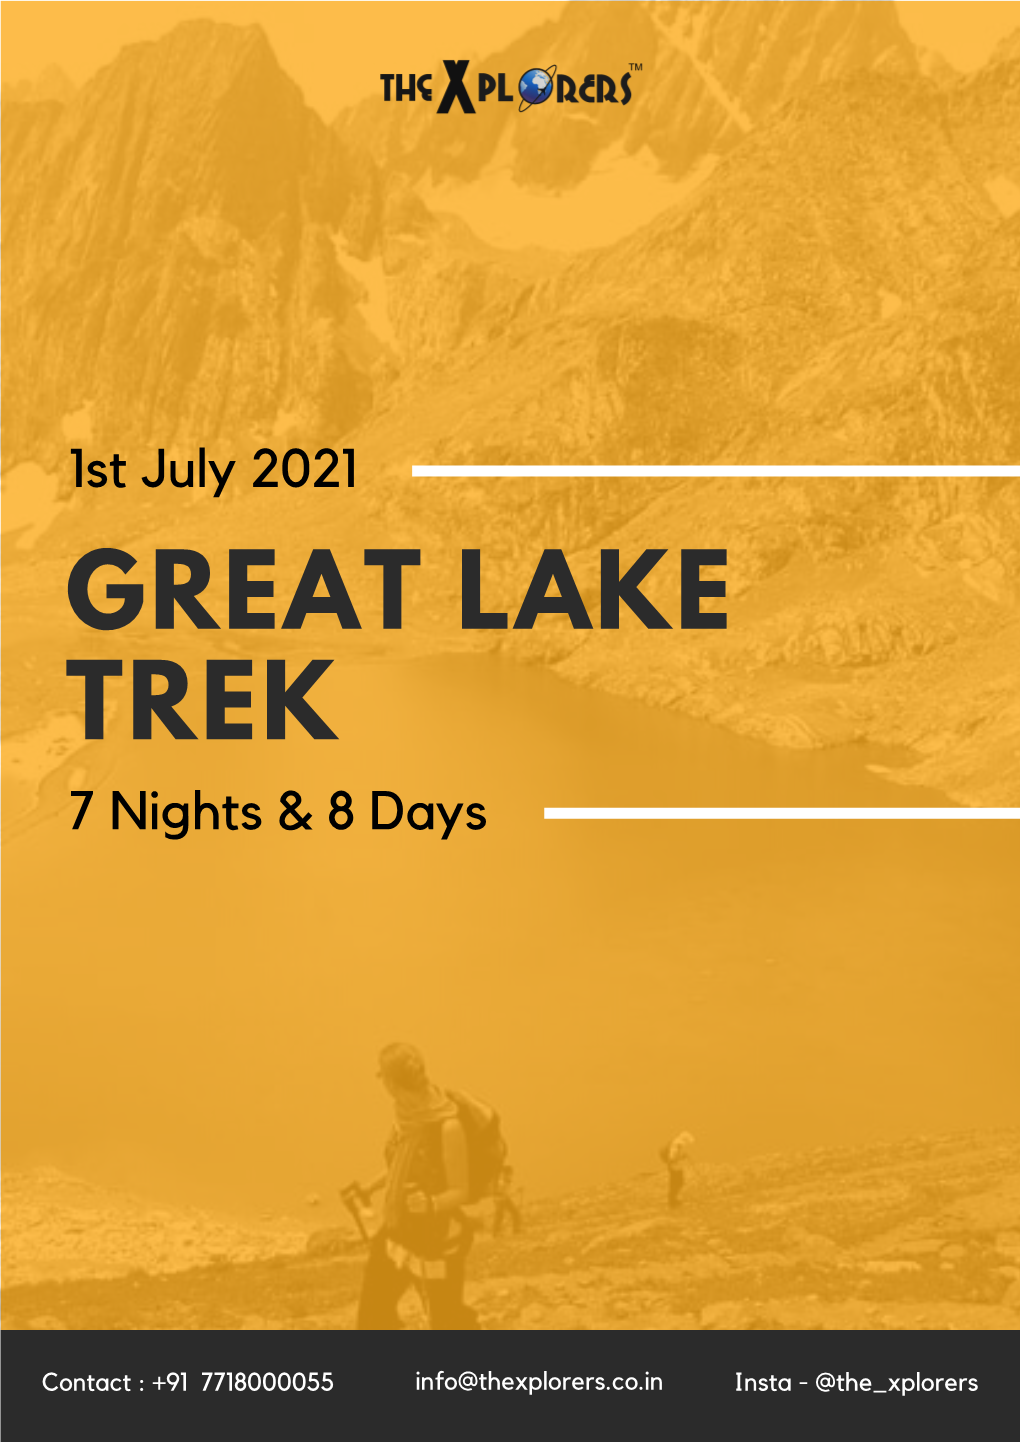 GREAT LAKE TREK 7 Nights & 8 Days